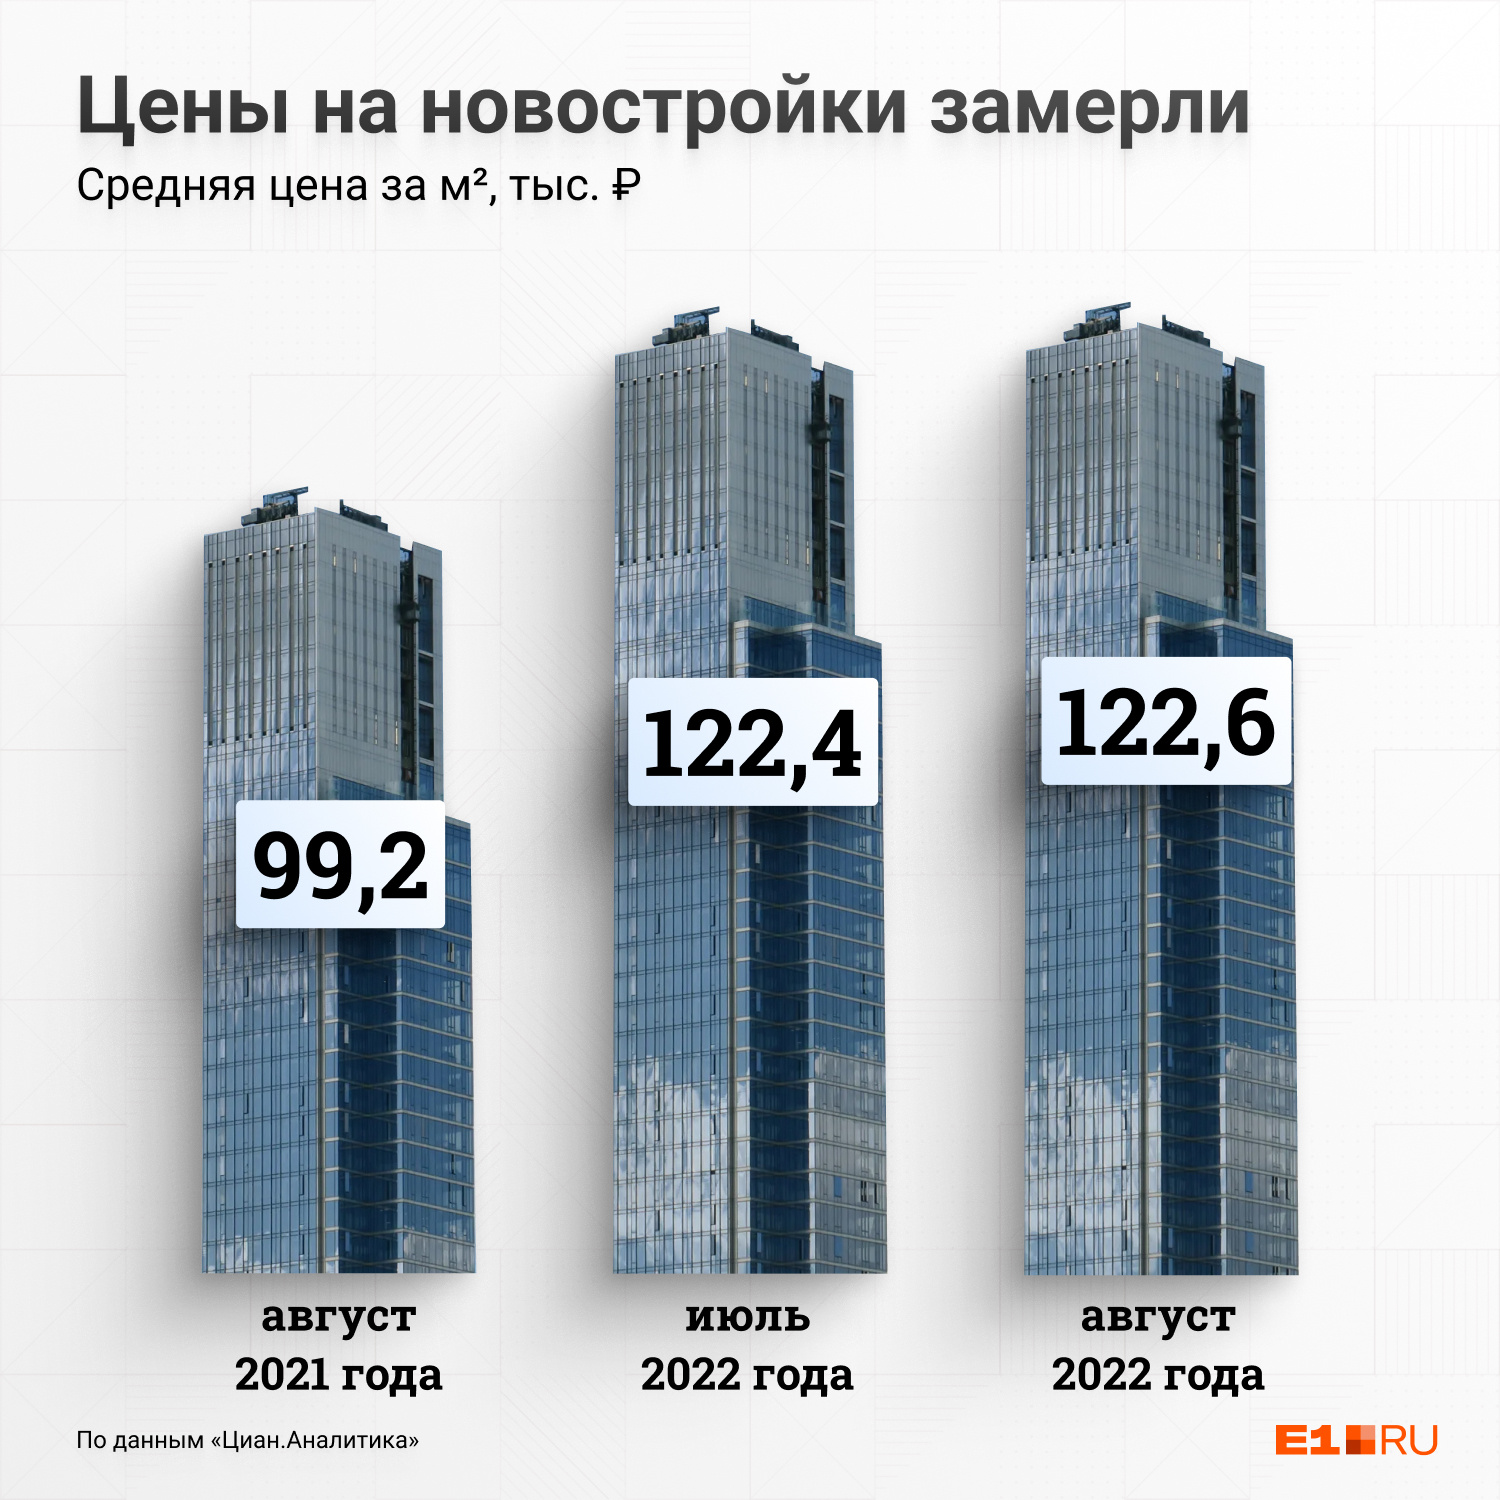 Еще год назад квадратный метр в новостройках стоил меньше 100 тысяч рублей